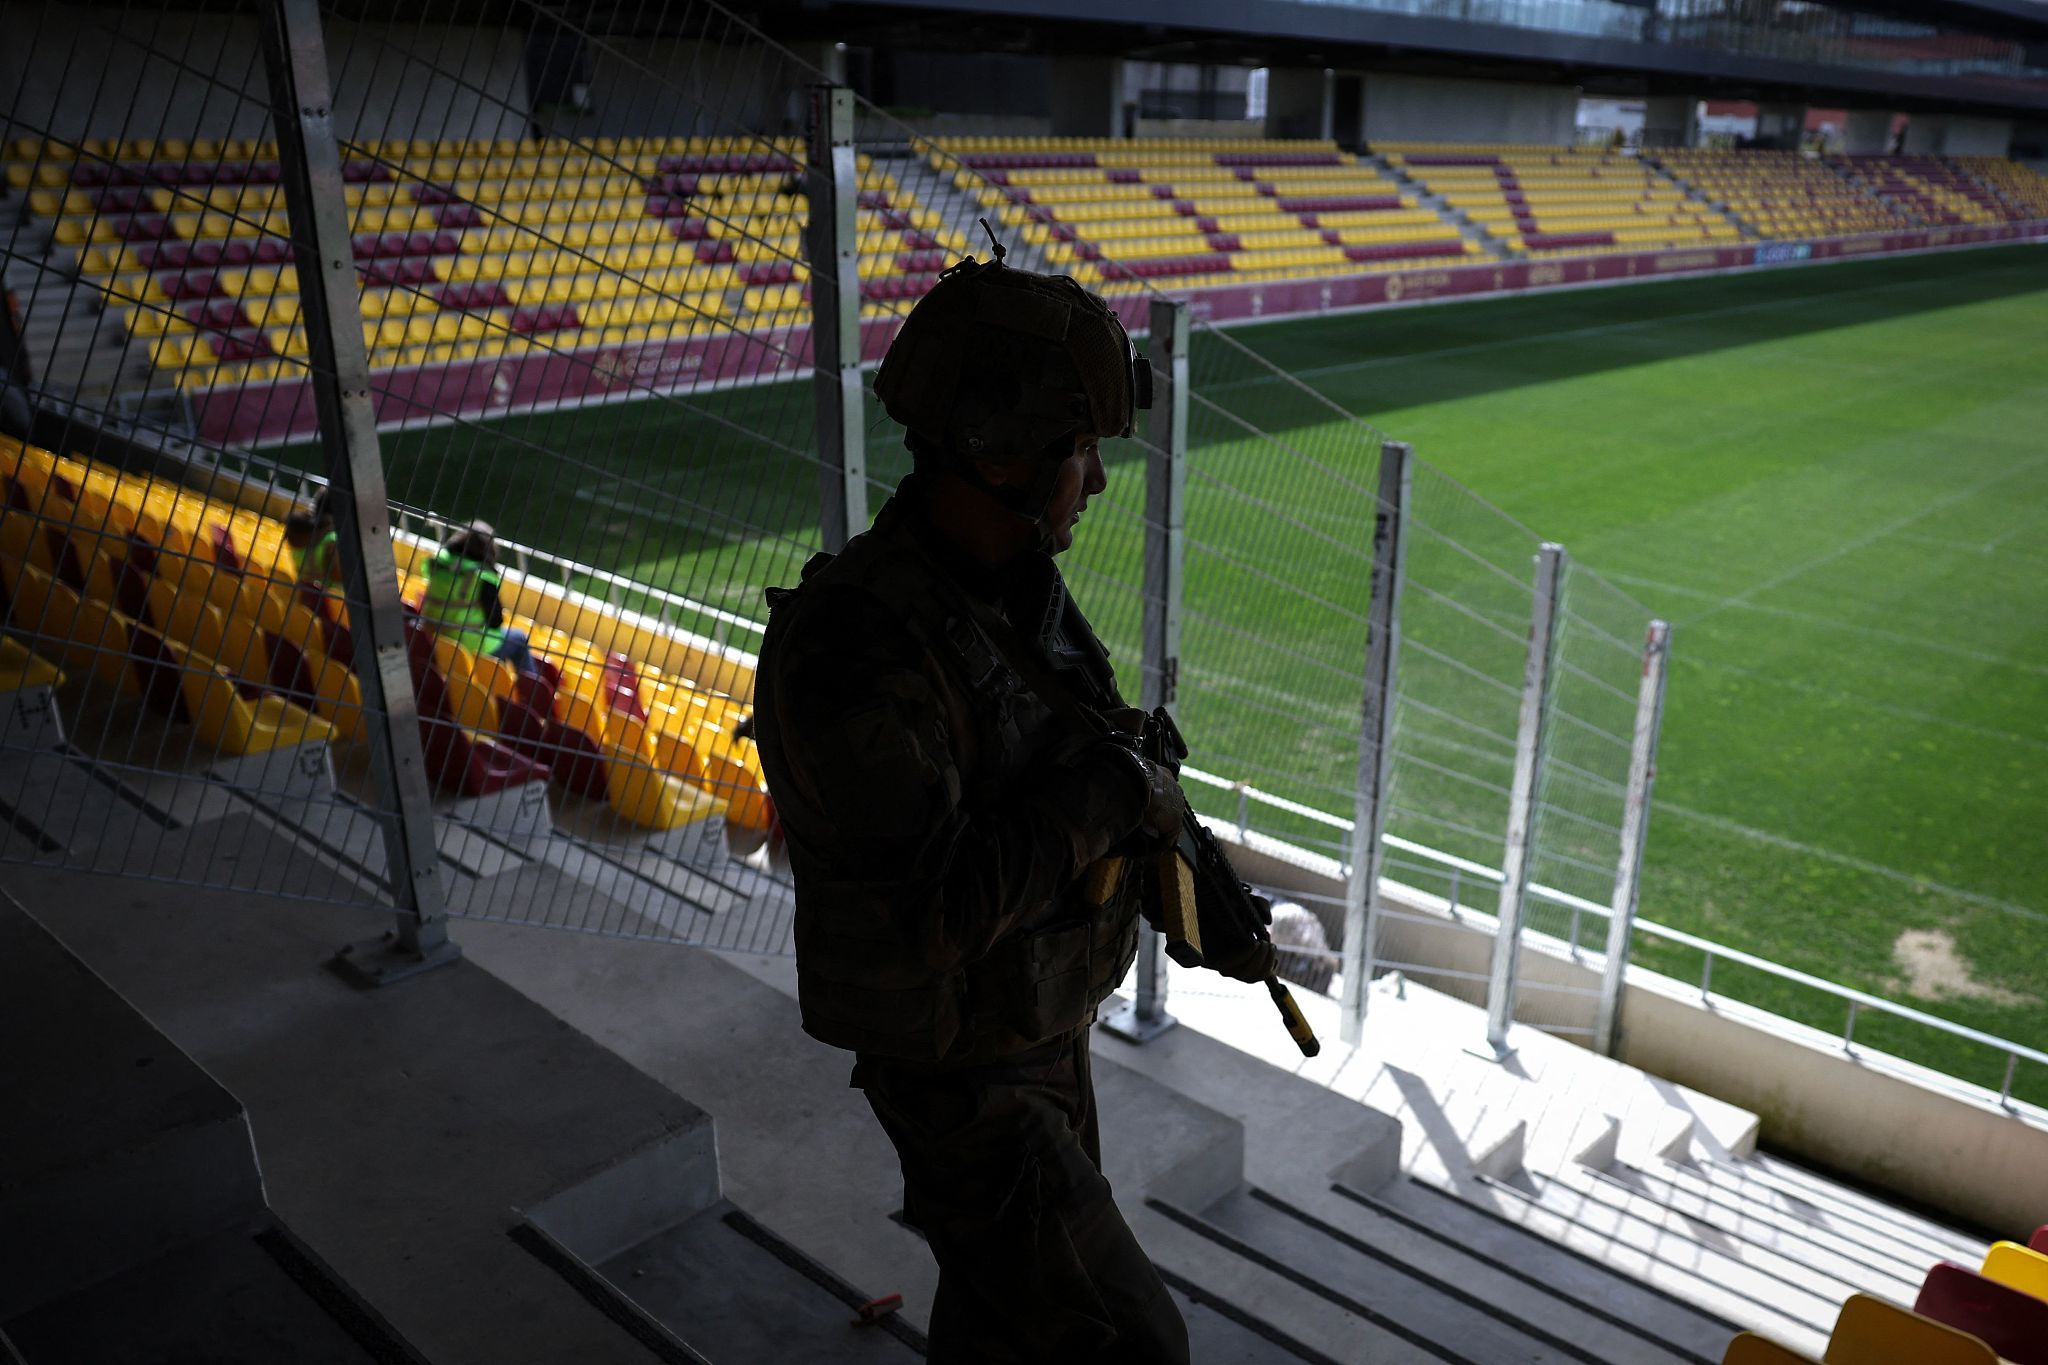 法国一体育场开展模拟恐袭联合演习。